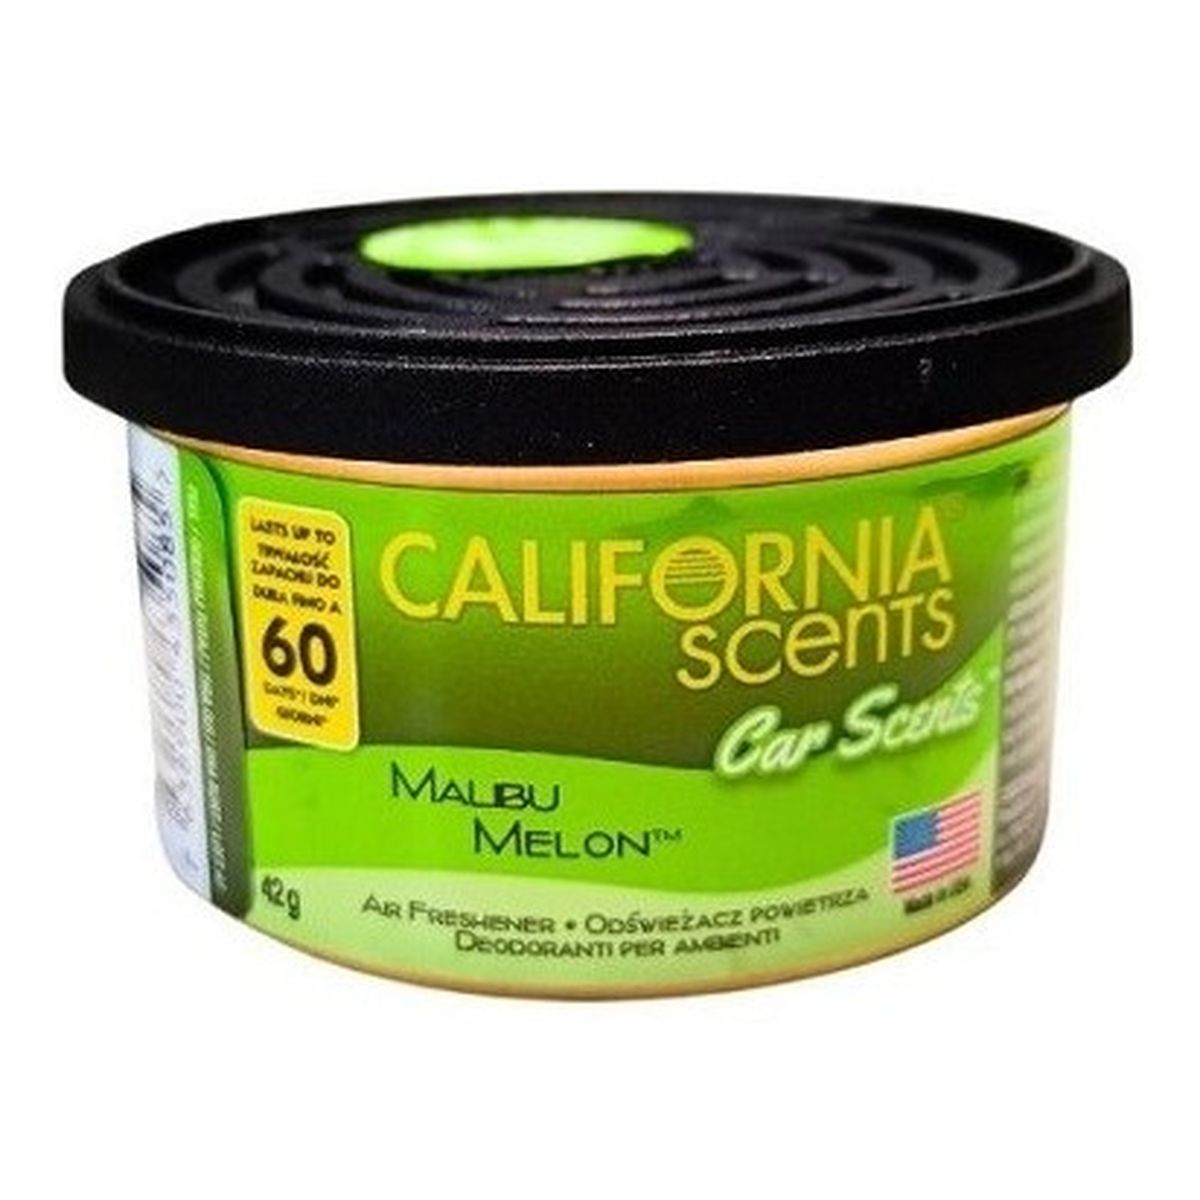 California Scents Car Scents Zapach Malibu Melon 42g